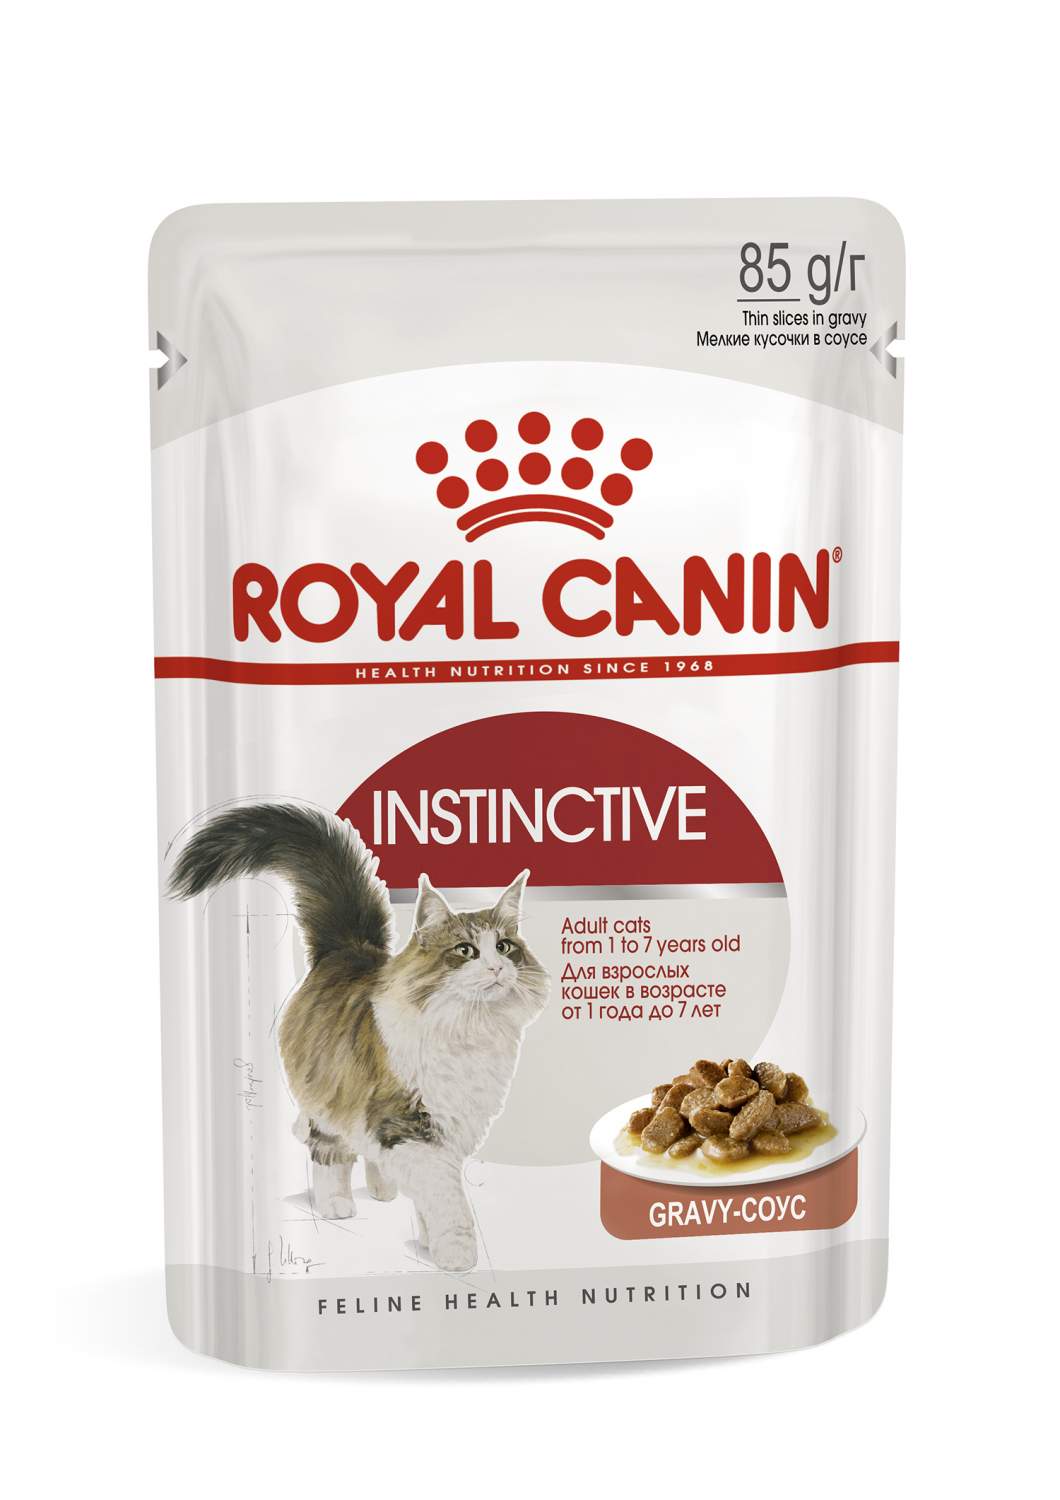 Влажный корм для кошек Royal Canin Instinctive, в соусе 24шт по 85 г -  отзывы покупателей на маркетплейсе Мегамаркет | Артикул товара:100026632193